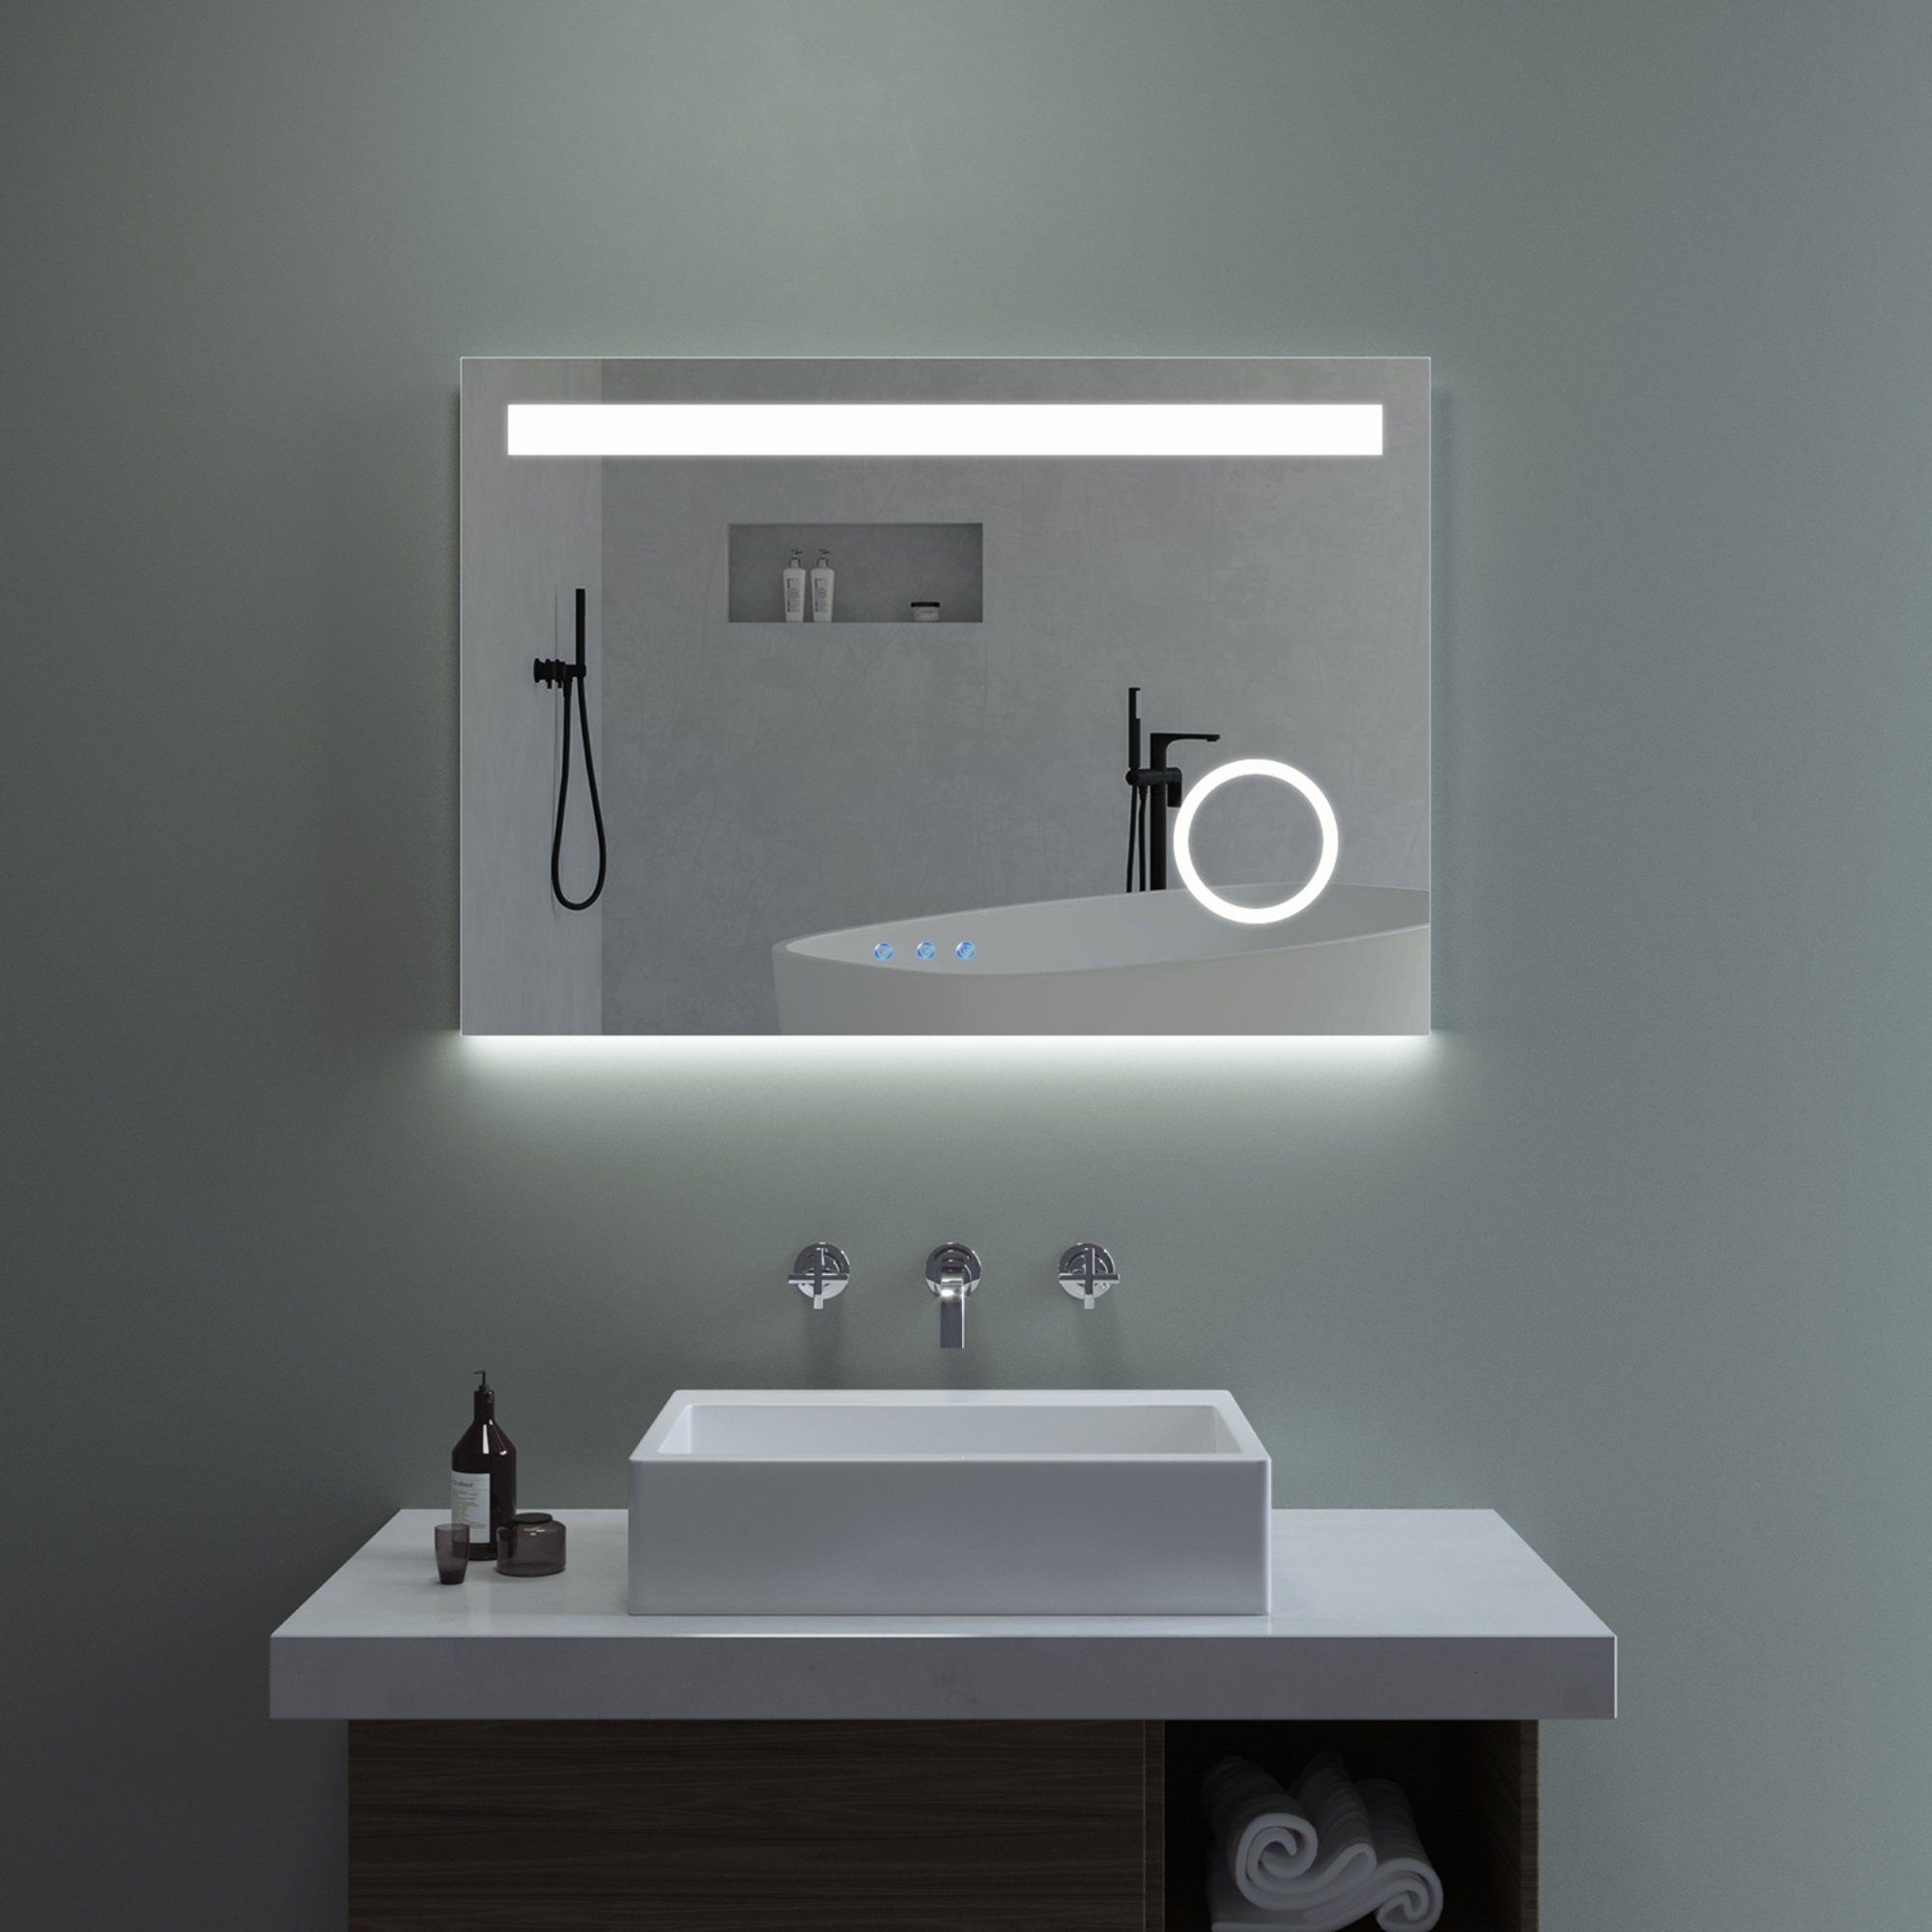 AQUALAVOS Badspiegel LED Badspiegel Kosmetikspiegel mit Beleuchtung 100x70 cm Wandspiegel, mit 3-Fach Vergrößerung Kosmetikspiegel, Touch-Schalter Dimmbar